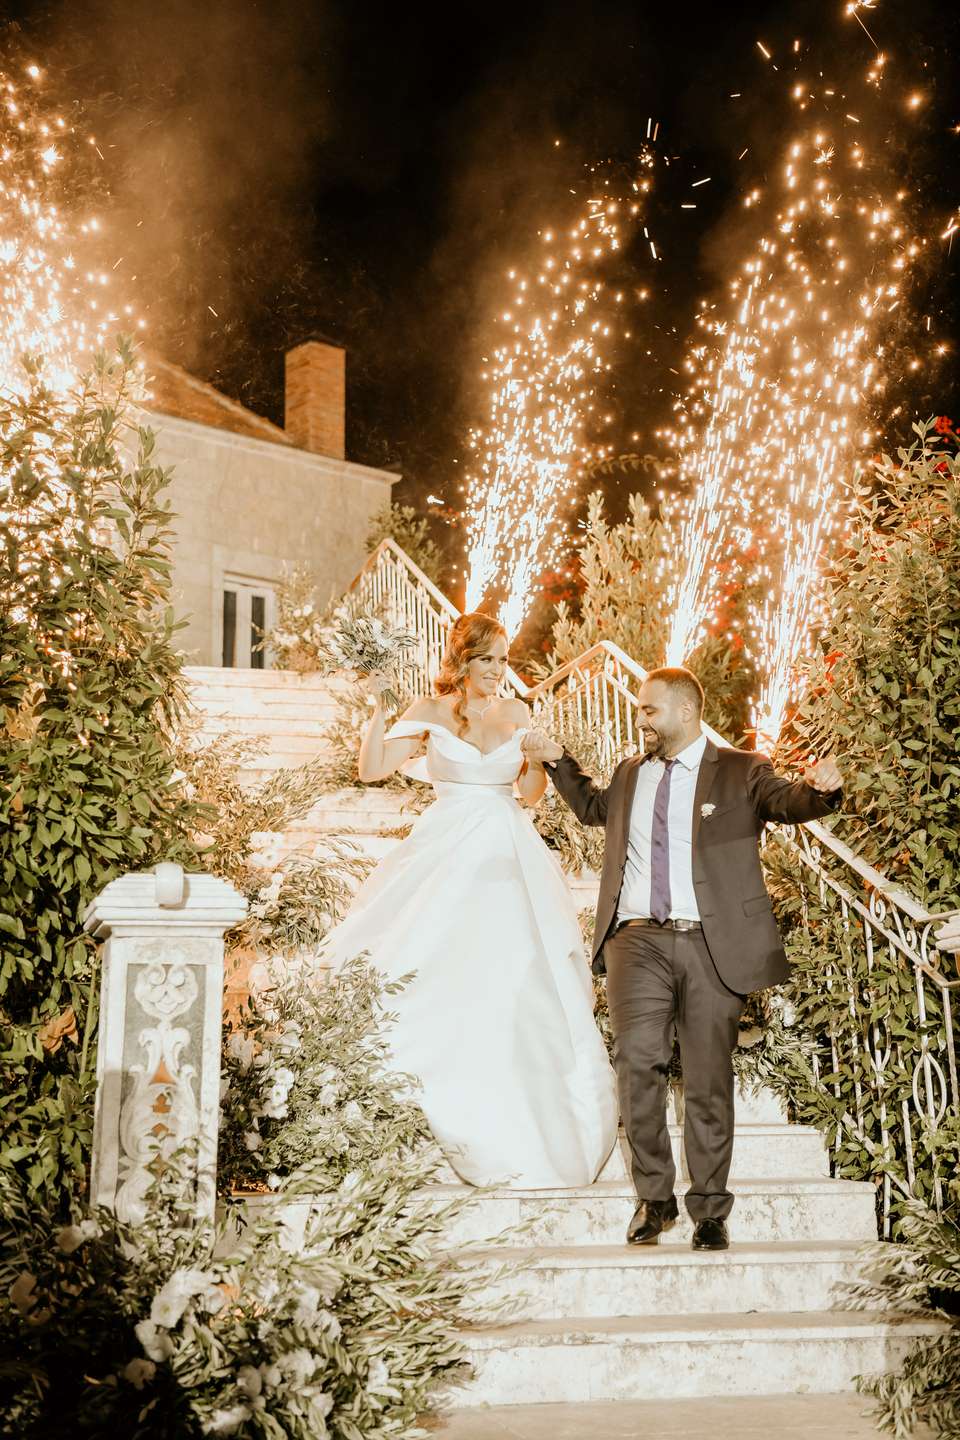 حفل زفاف مستوحى من شجرة الزيتون في لبنان 